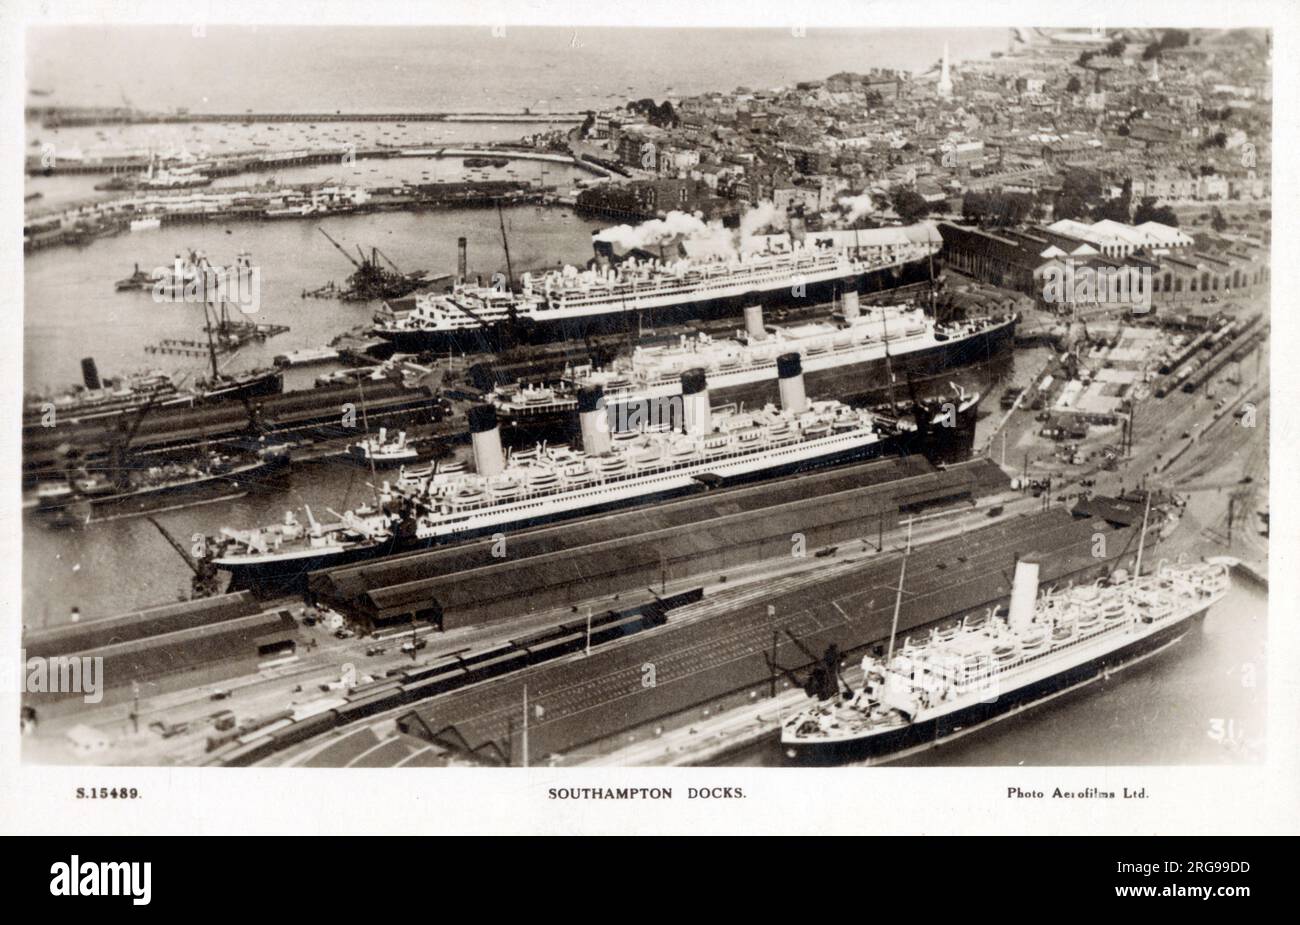 Vue aérienne de Southampton Docks - Great Ocean Liners en attente de départ sur la route Trans-Atlantique. Les navires comprennent le RMS Olympic. Banque D'Images